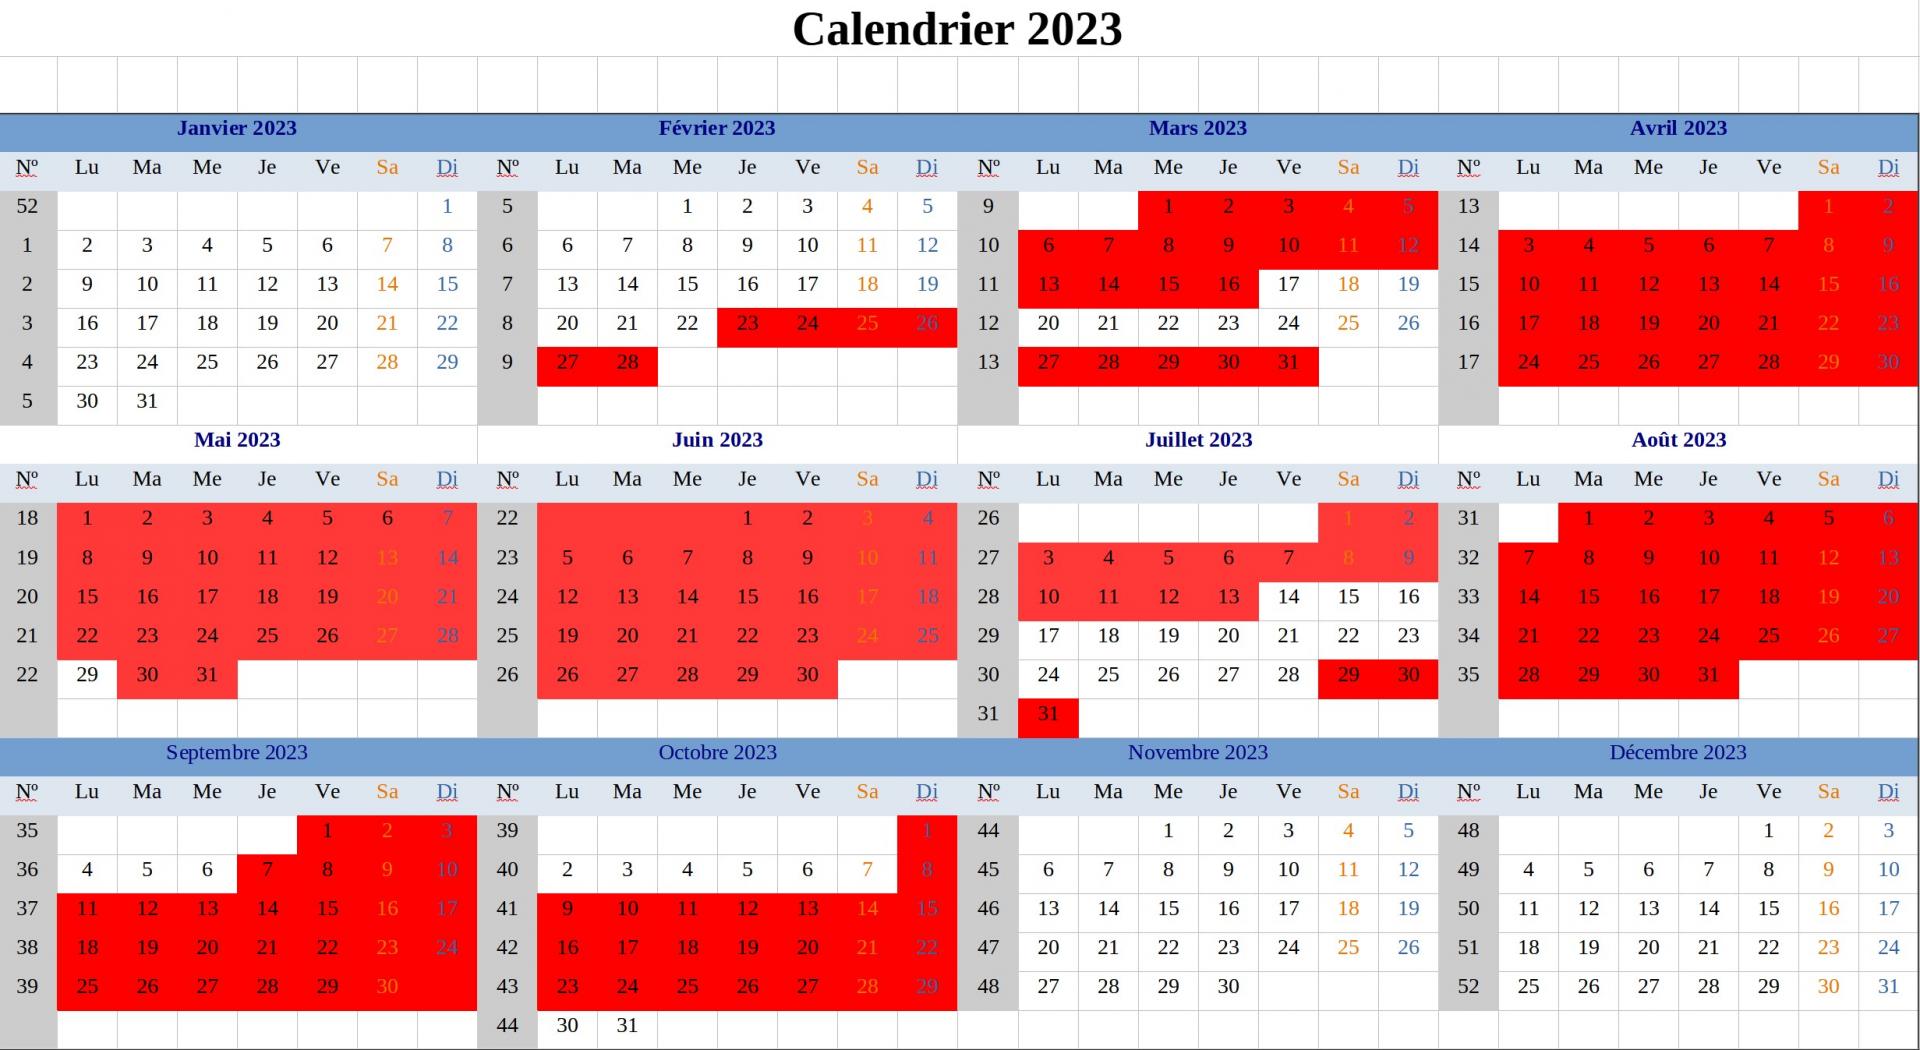 Calendrier 2023 v13